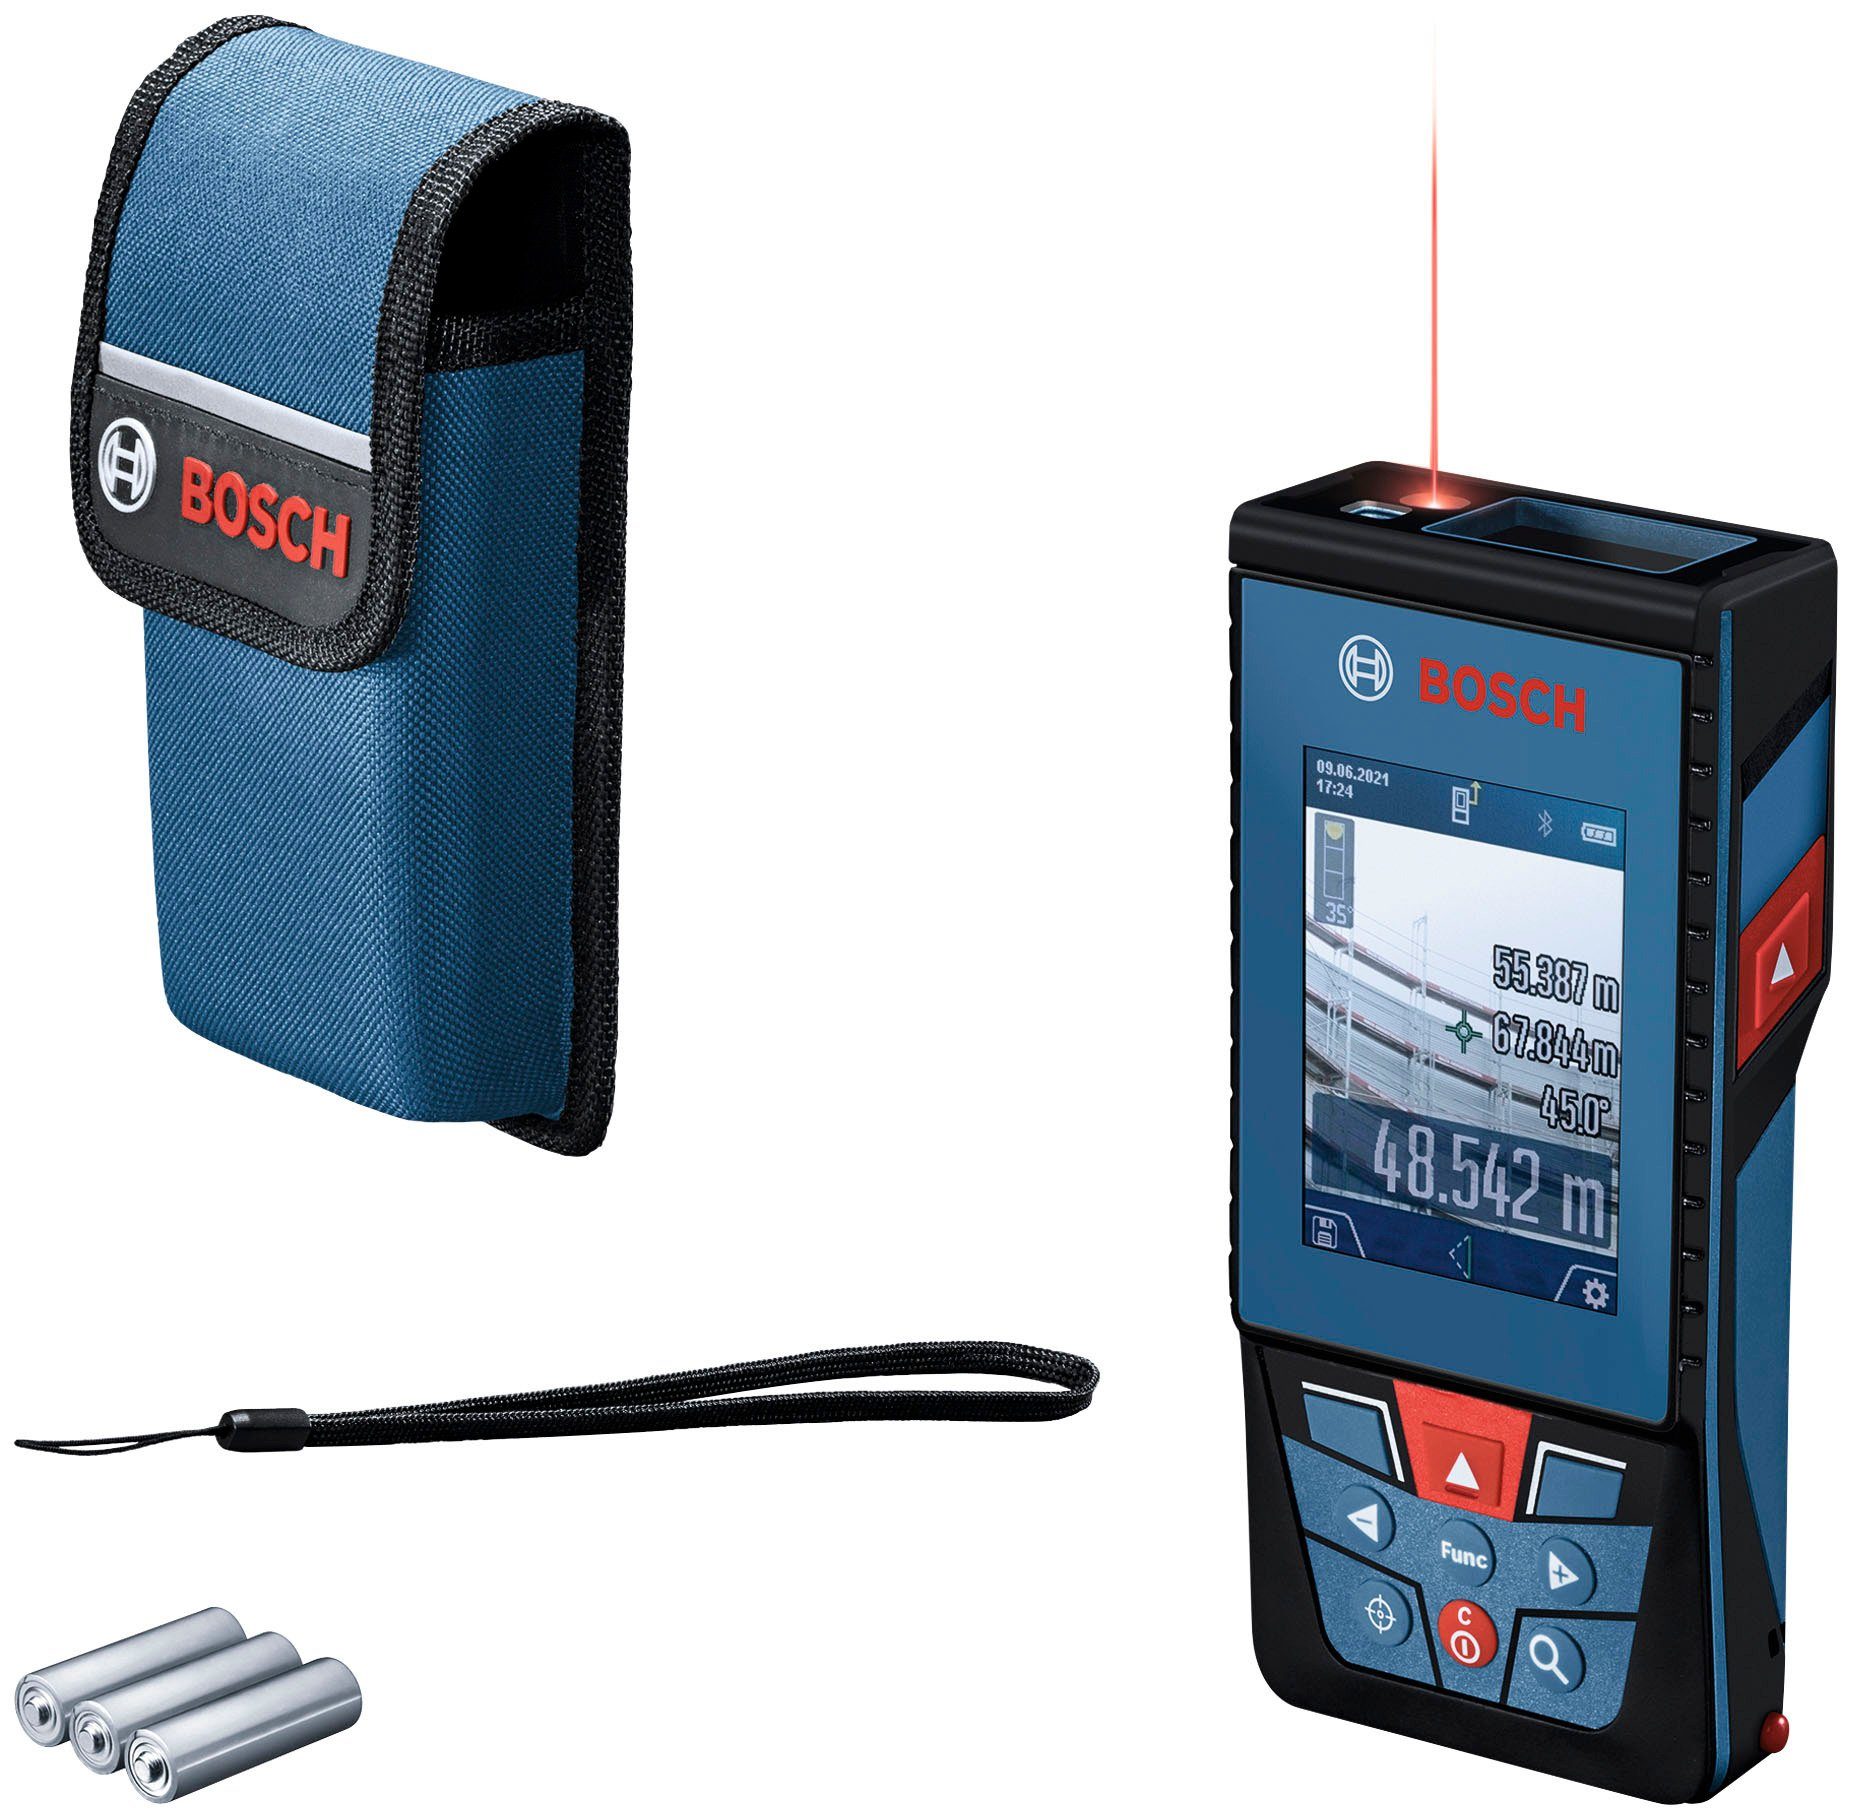 Bosch Professional Entfernungsmesser GLM 100-25 leicht anpassbar für Baustellenbedingungen, C, raue